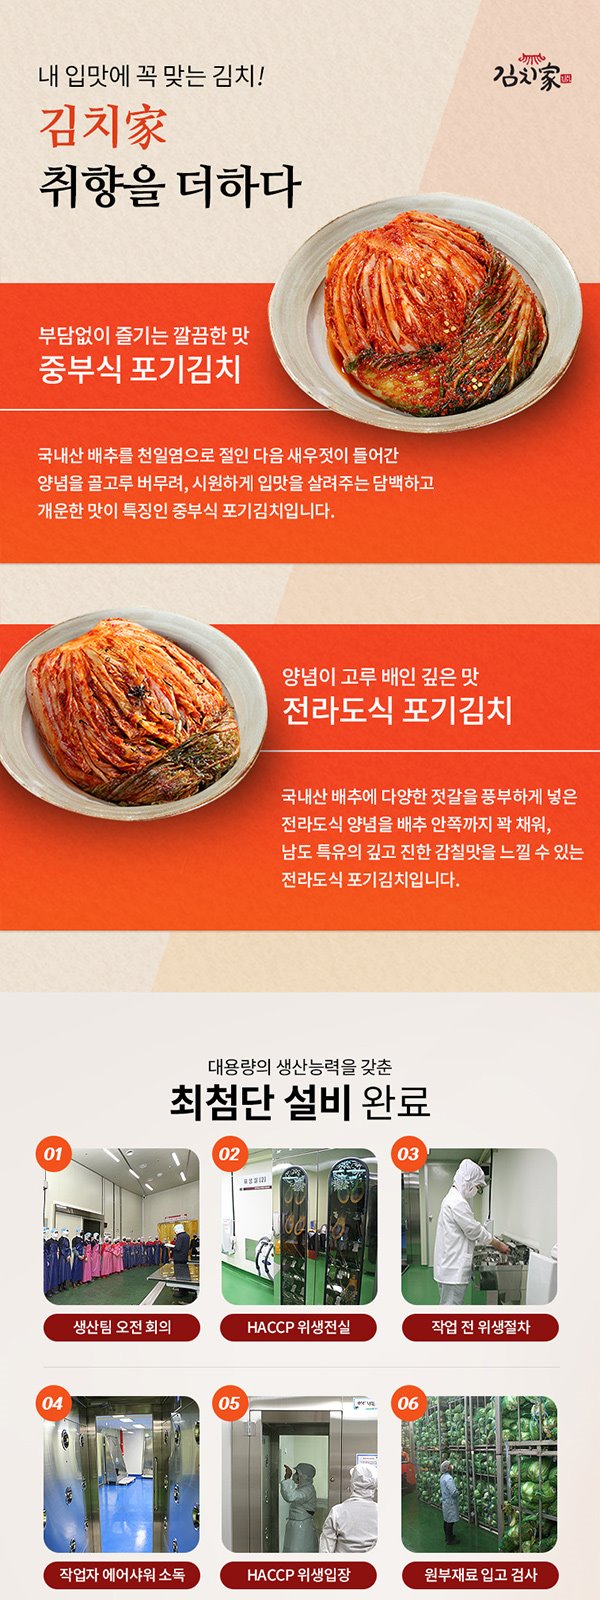 (주)김치타운 food_0104_3